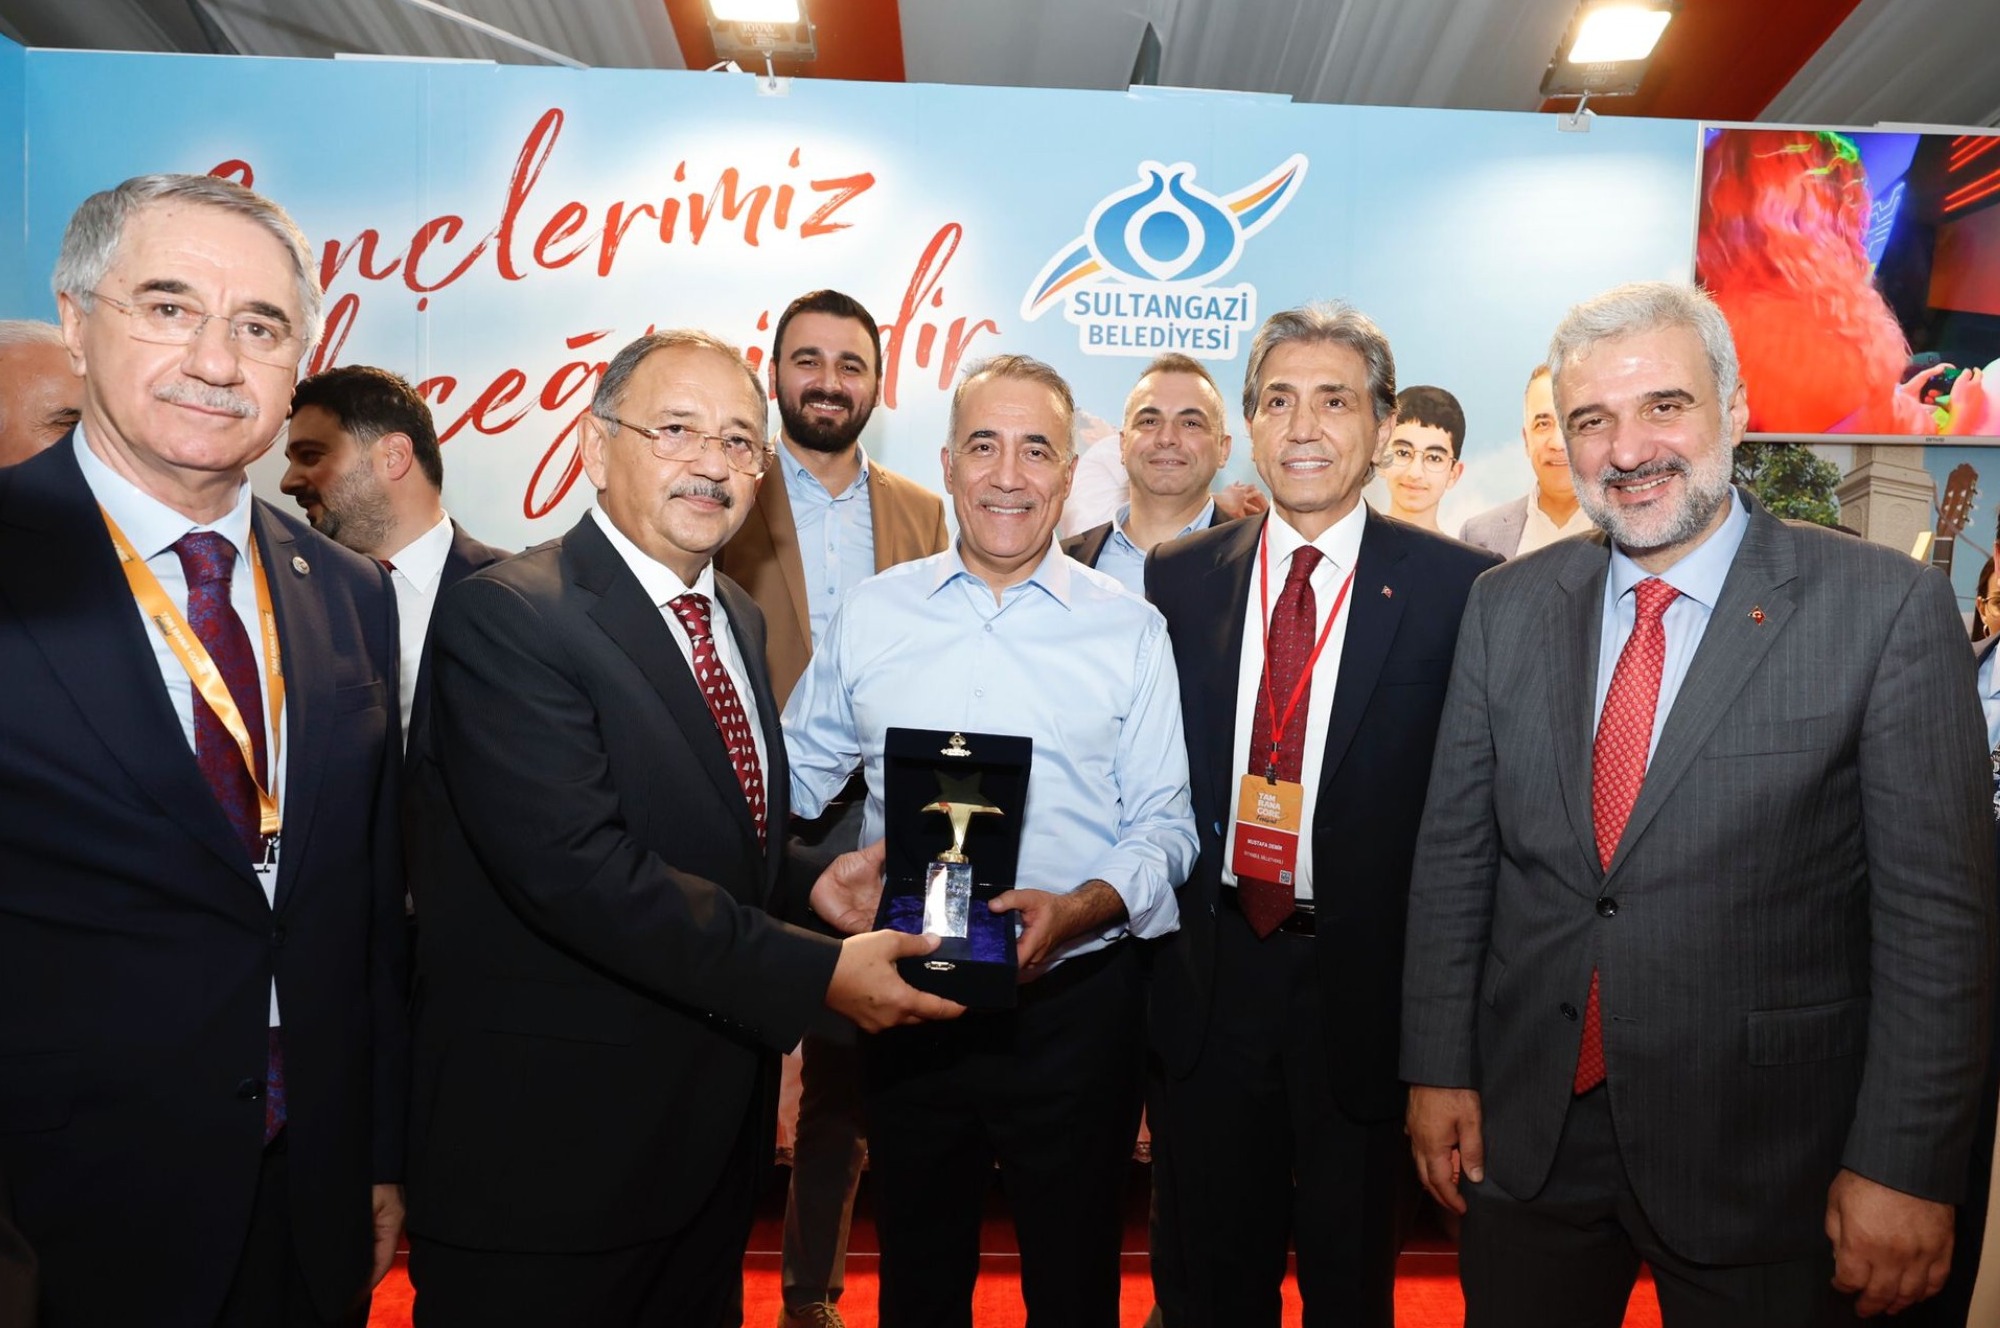 Sultangazi Belediyesi’ne ‘Genç İstihdam’ Proje Ödülü